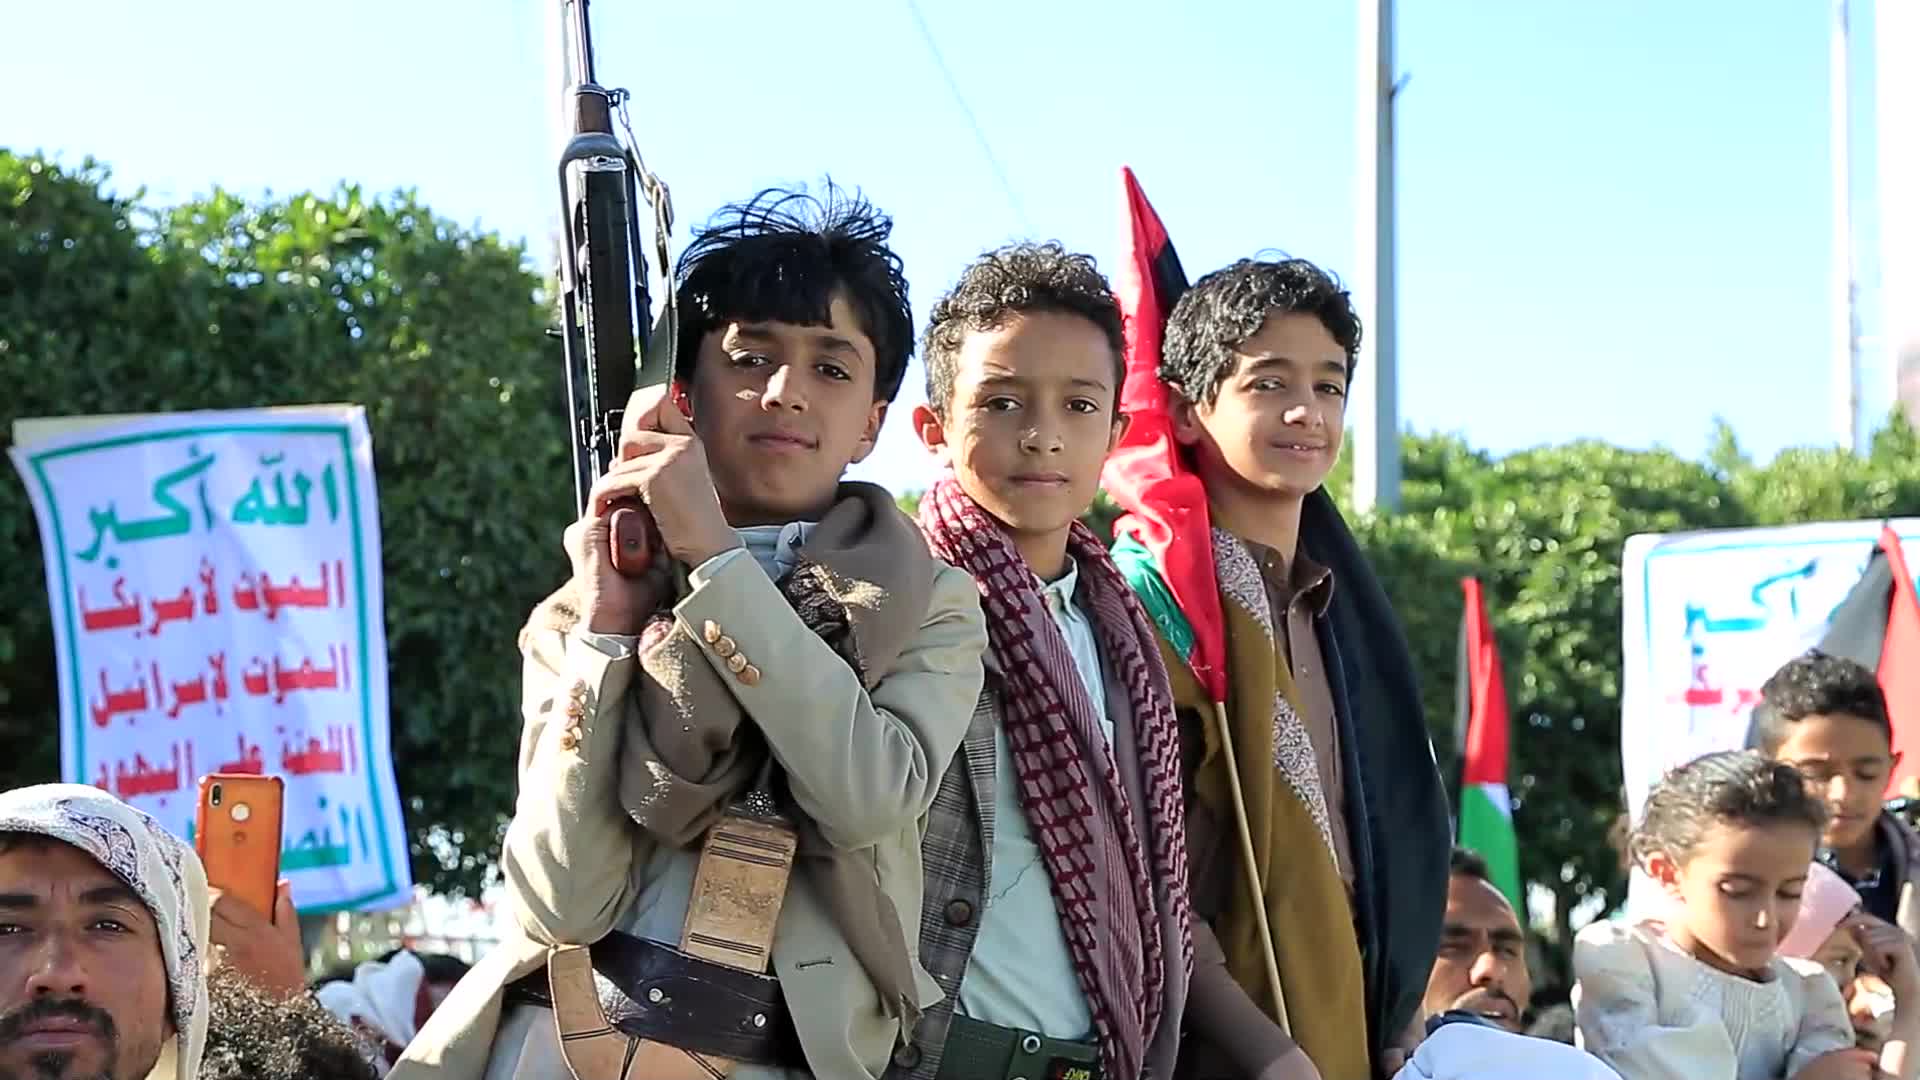 اليمن _ حشود جماهيرية ضخمة في صنعاء تأكيداً على استمرار دعم غزة - snapshot 63.74